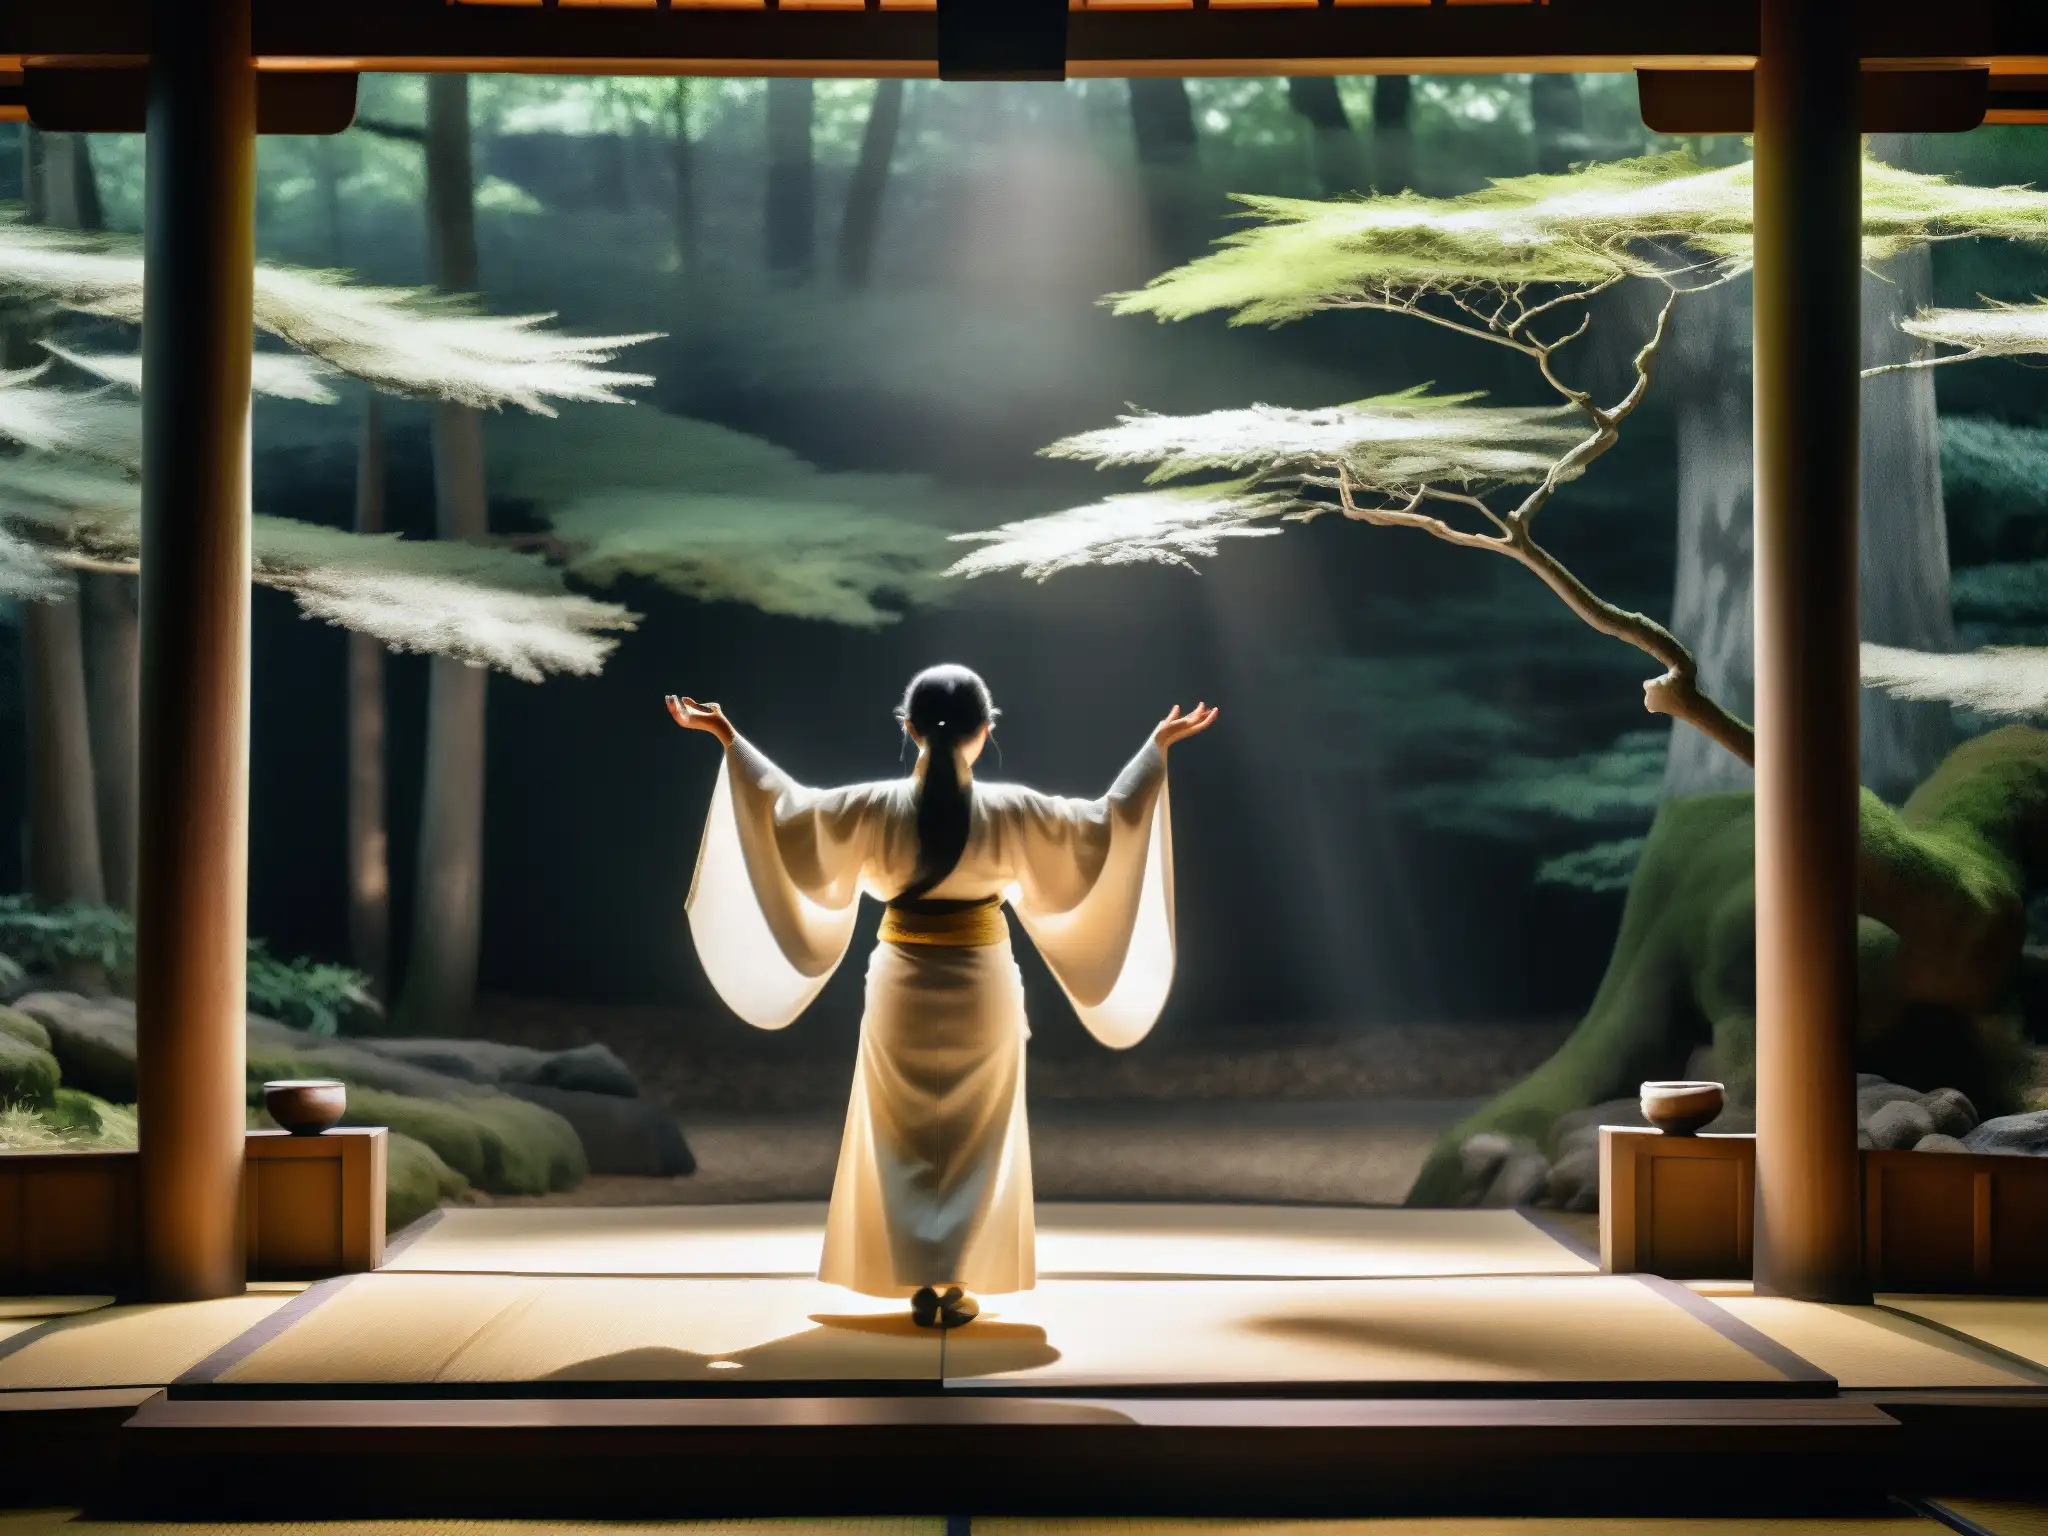 En un escenario tradicional japonés de Noh, una figura fantasmal en kimono blanco se extiende hacia el público en la tenue luz de un foco